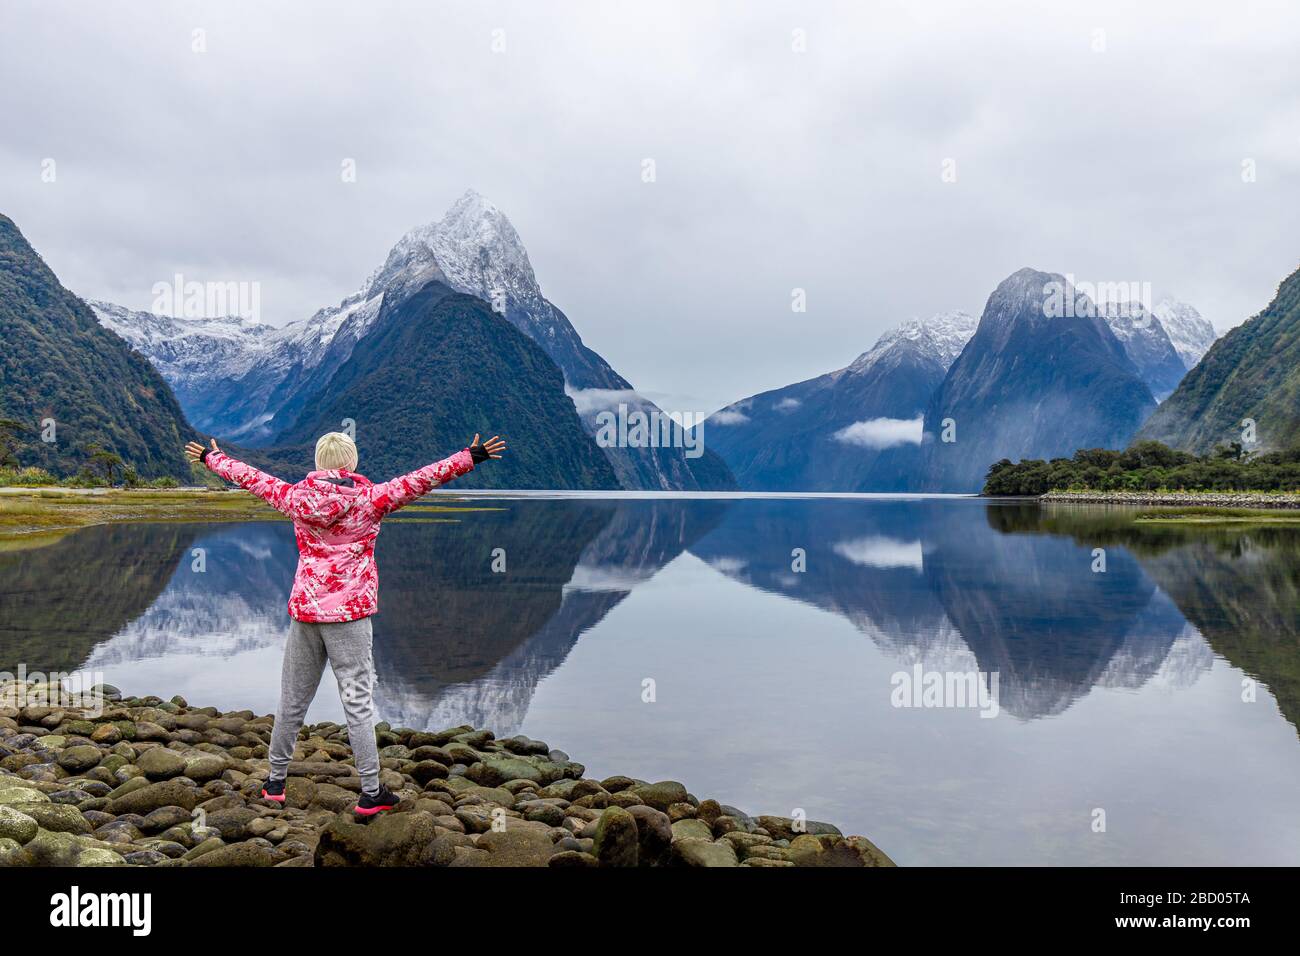 Jeune voyageur asiatique célébrant le succès à Milford Sound, parc national de Fiordland, île du Sud, Nouvelle-Zélande Banque D'Images